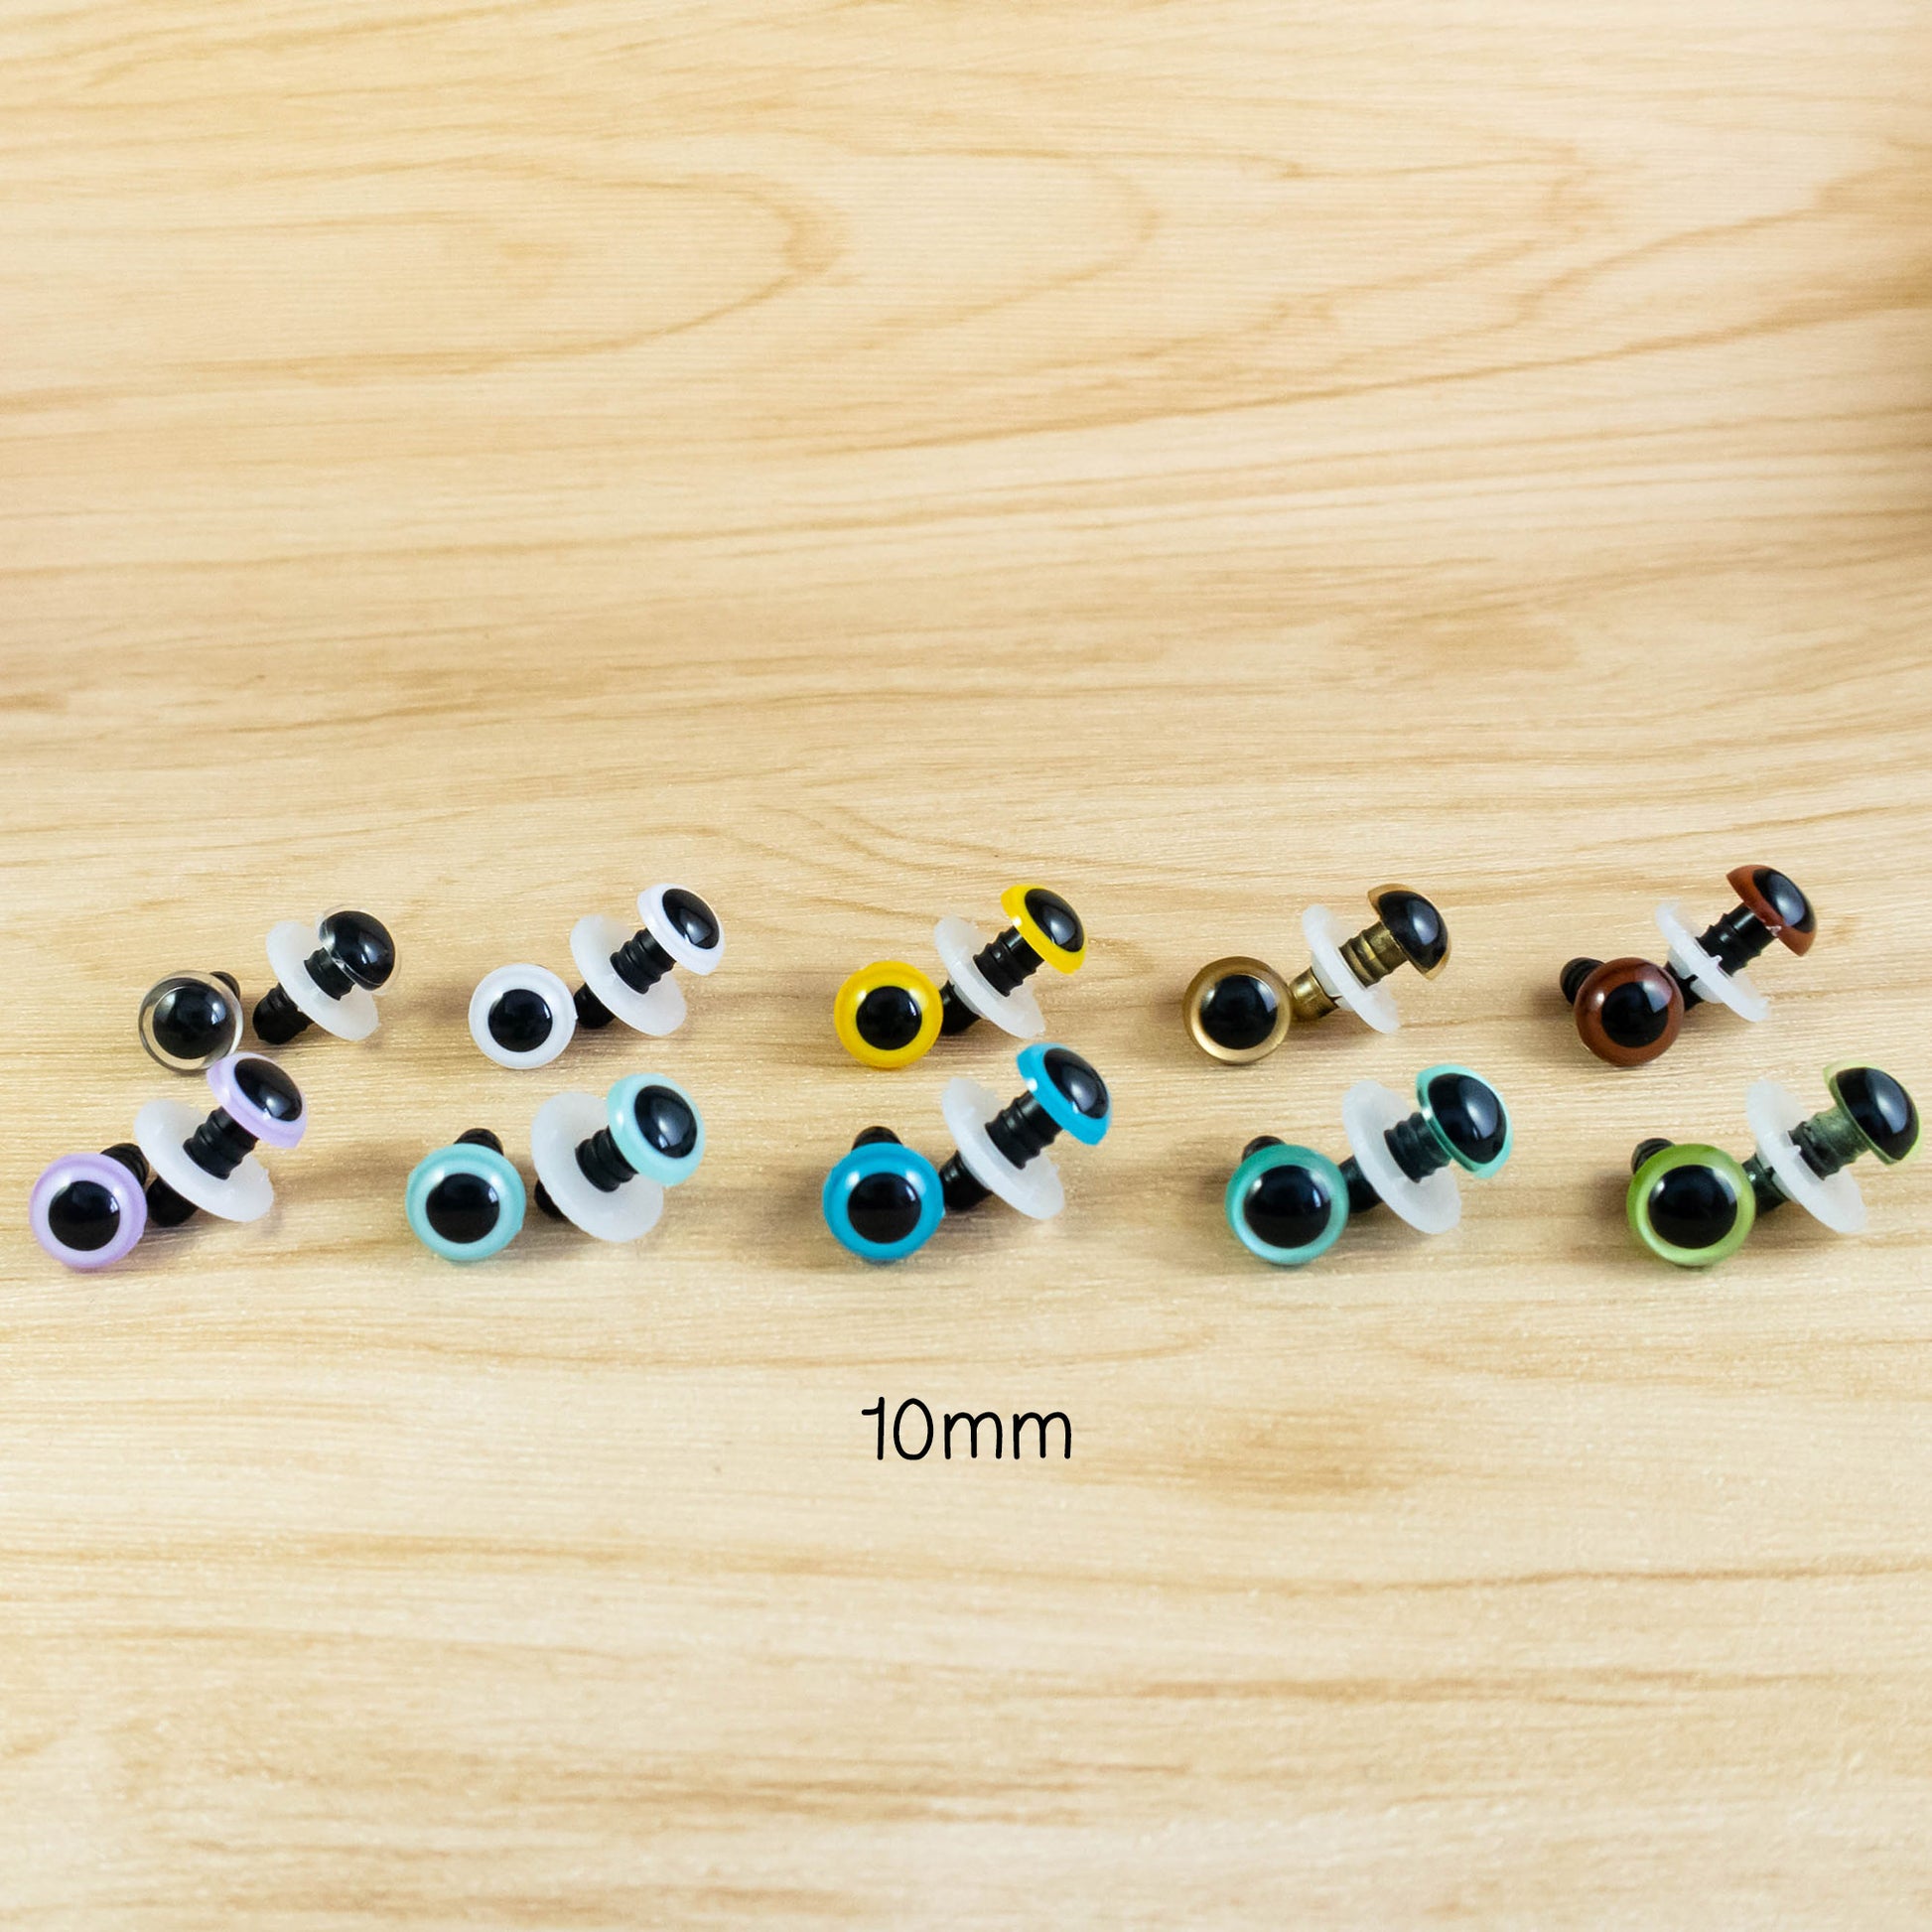 10mm colour toys eyes for crochet animals, teddy bears